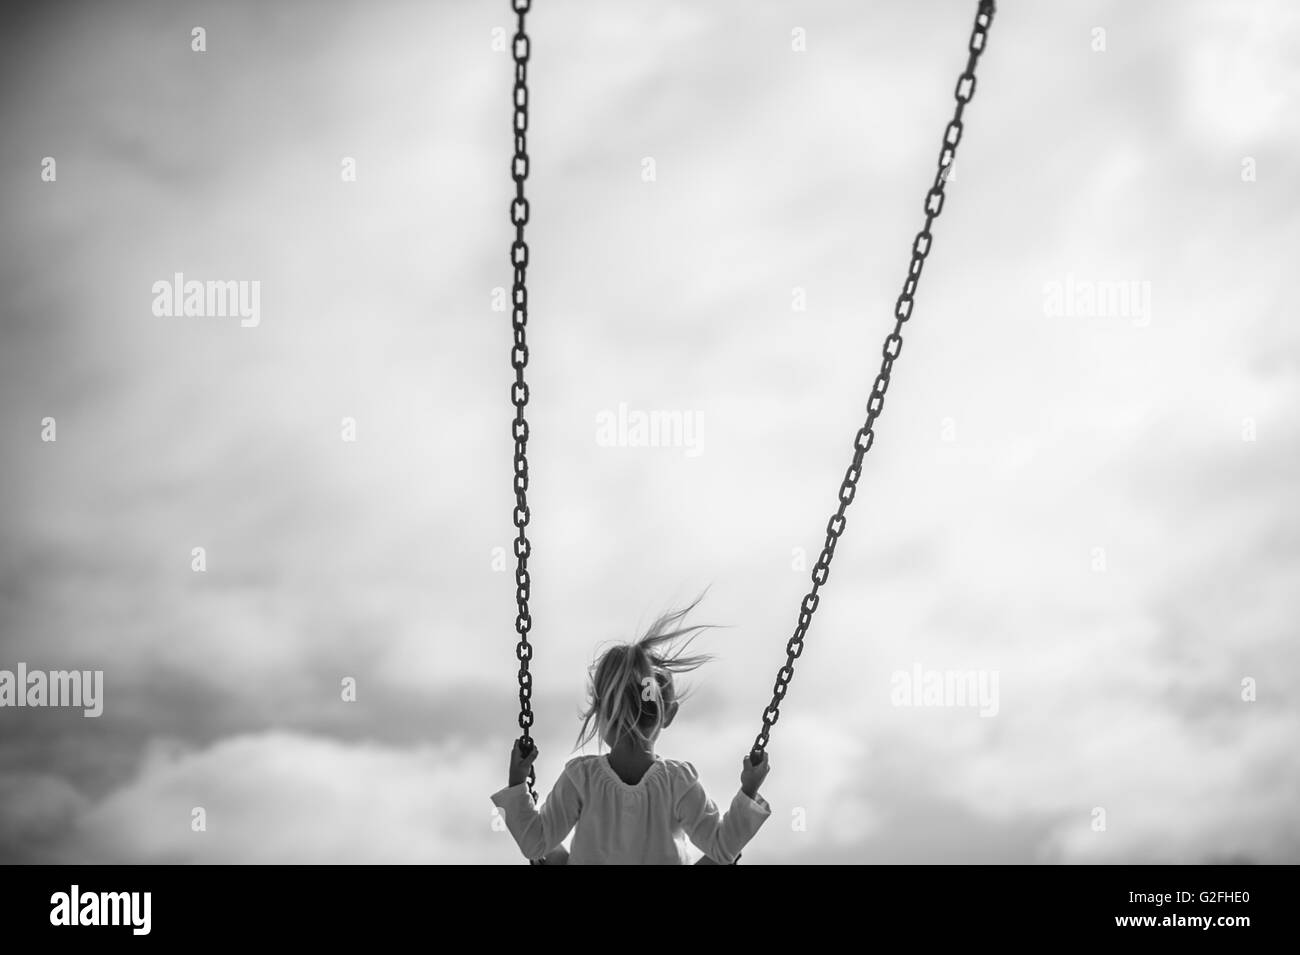 La ragazza sull'altalena contro il cielo grigio, vista posteriore Foto  stock - Alamy